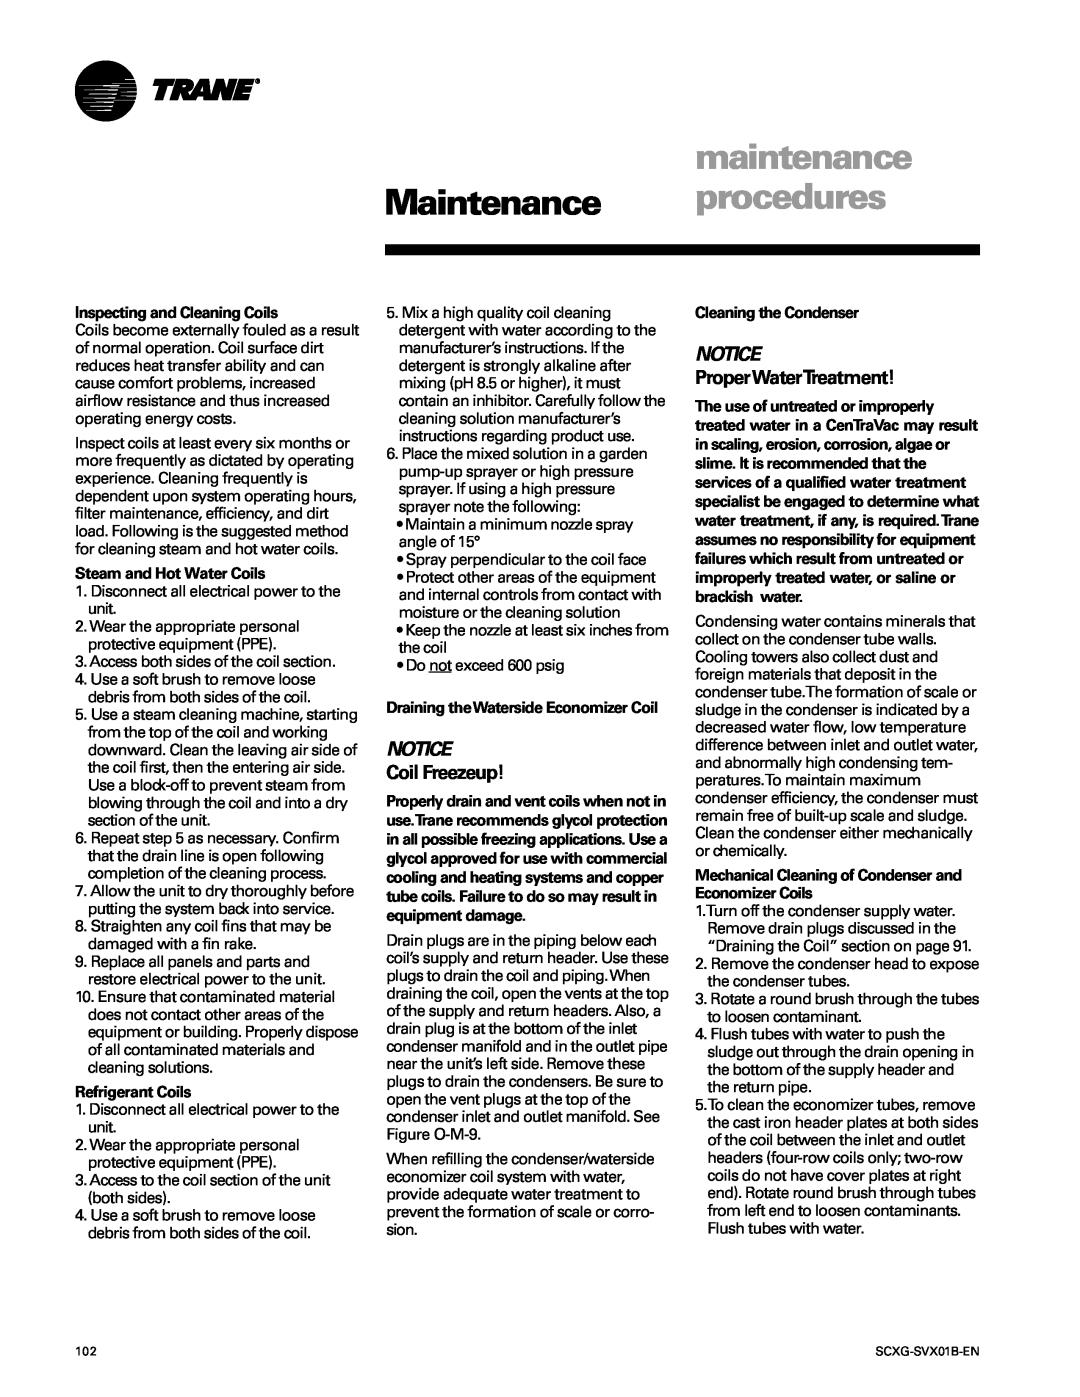 Trane SCXG-SVX01B-EN maintenance, Maintenance procedures, Coil Freezeup, Notice, ProperWaterTreatment, Refrigerant Coils 